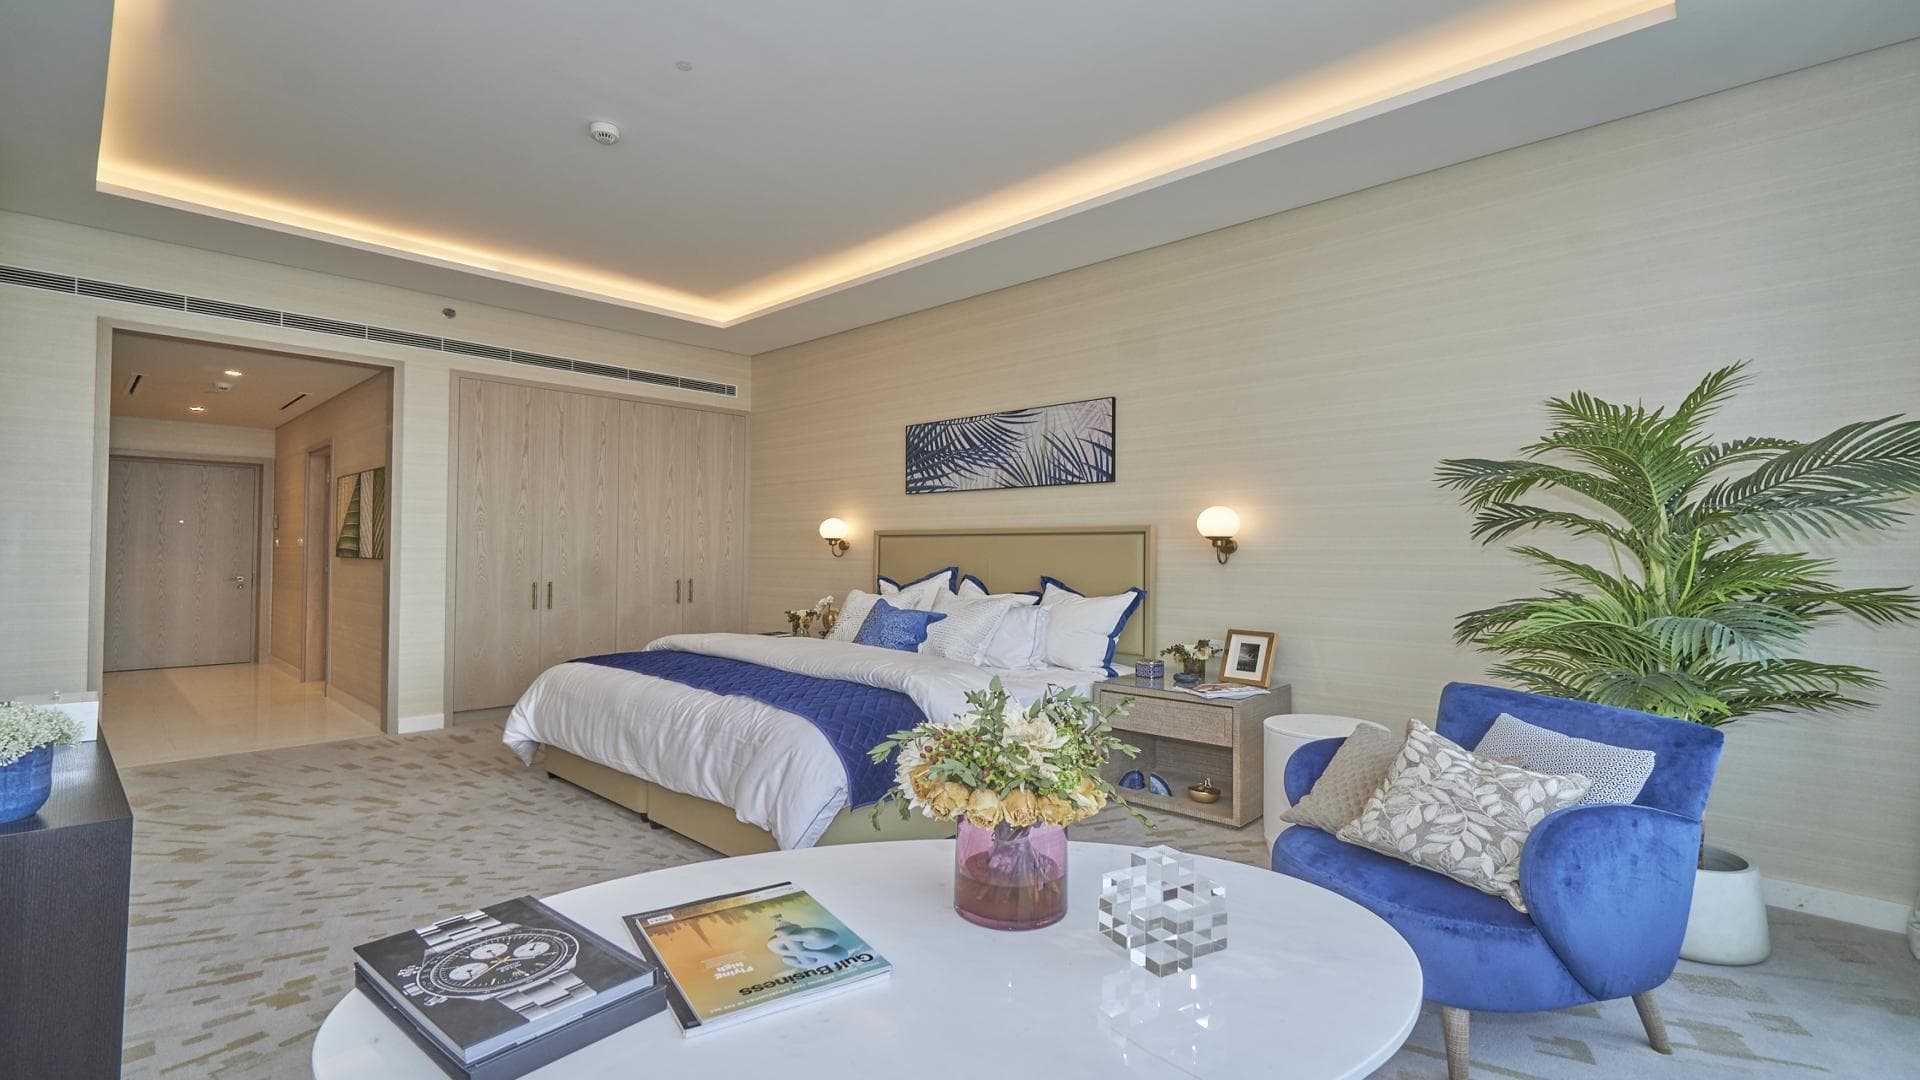 99 Bedroom Apartment For Rent Al Majara 5 Lp39076 1e5fa35927daf200.jpg